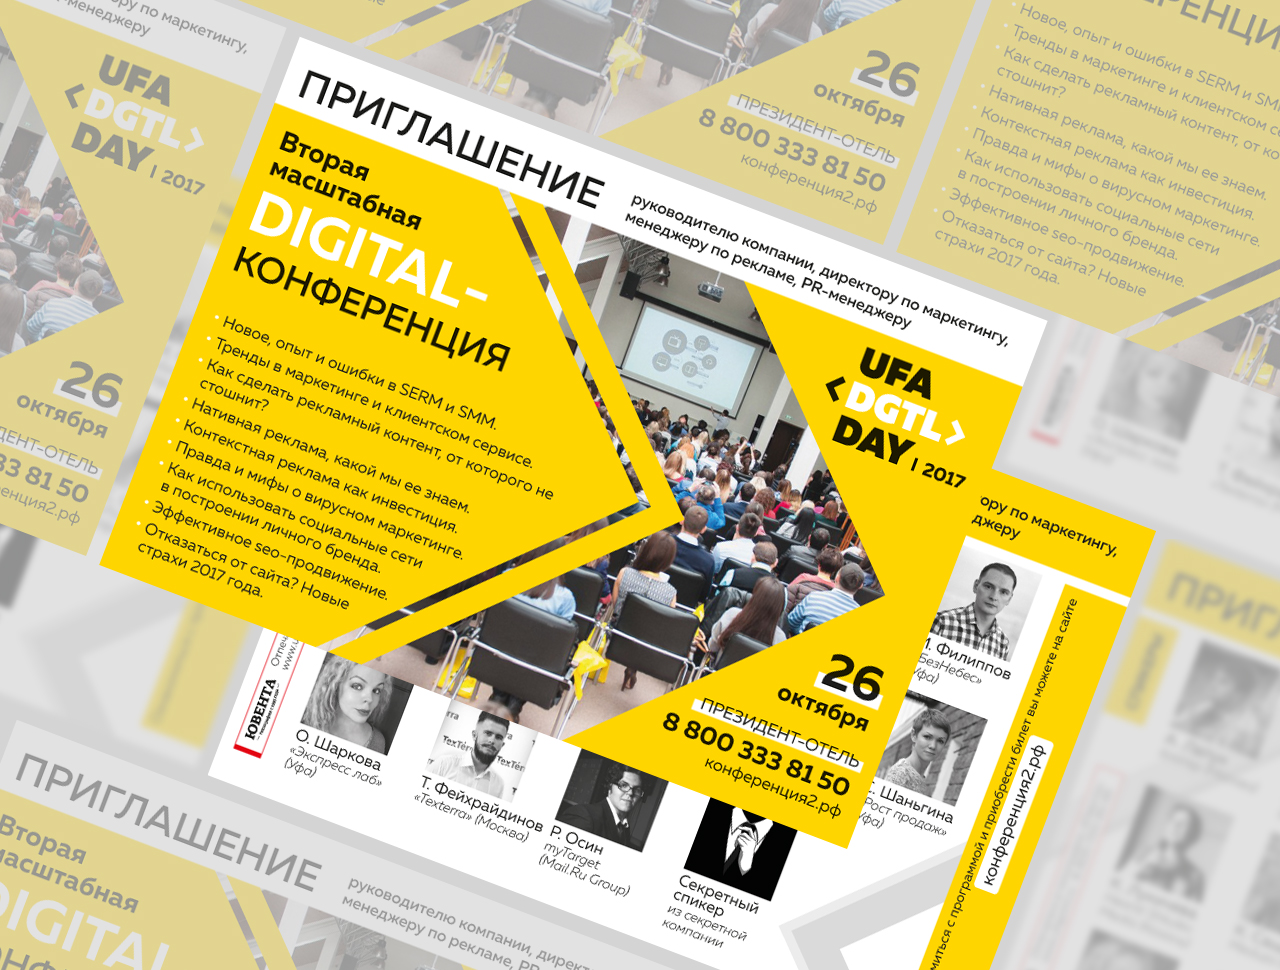 Разработка дизайна Ufa Digital Day